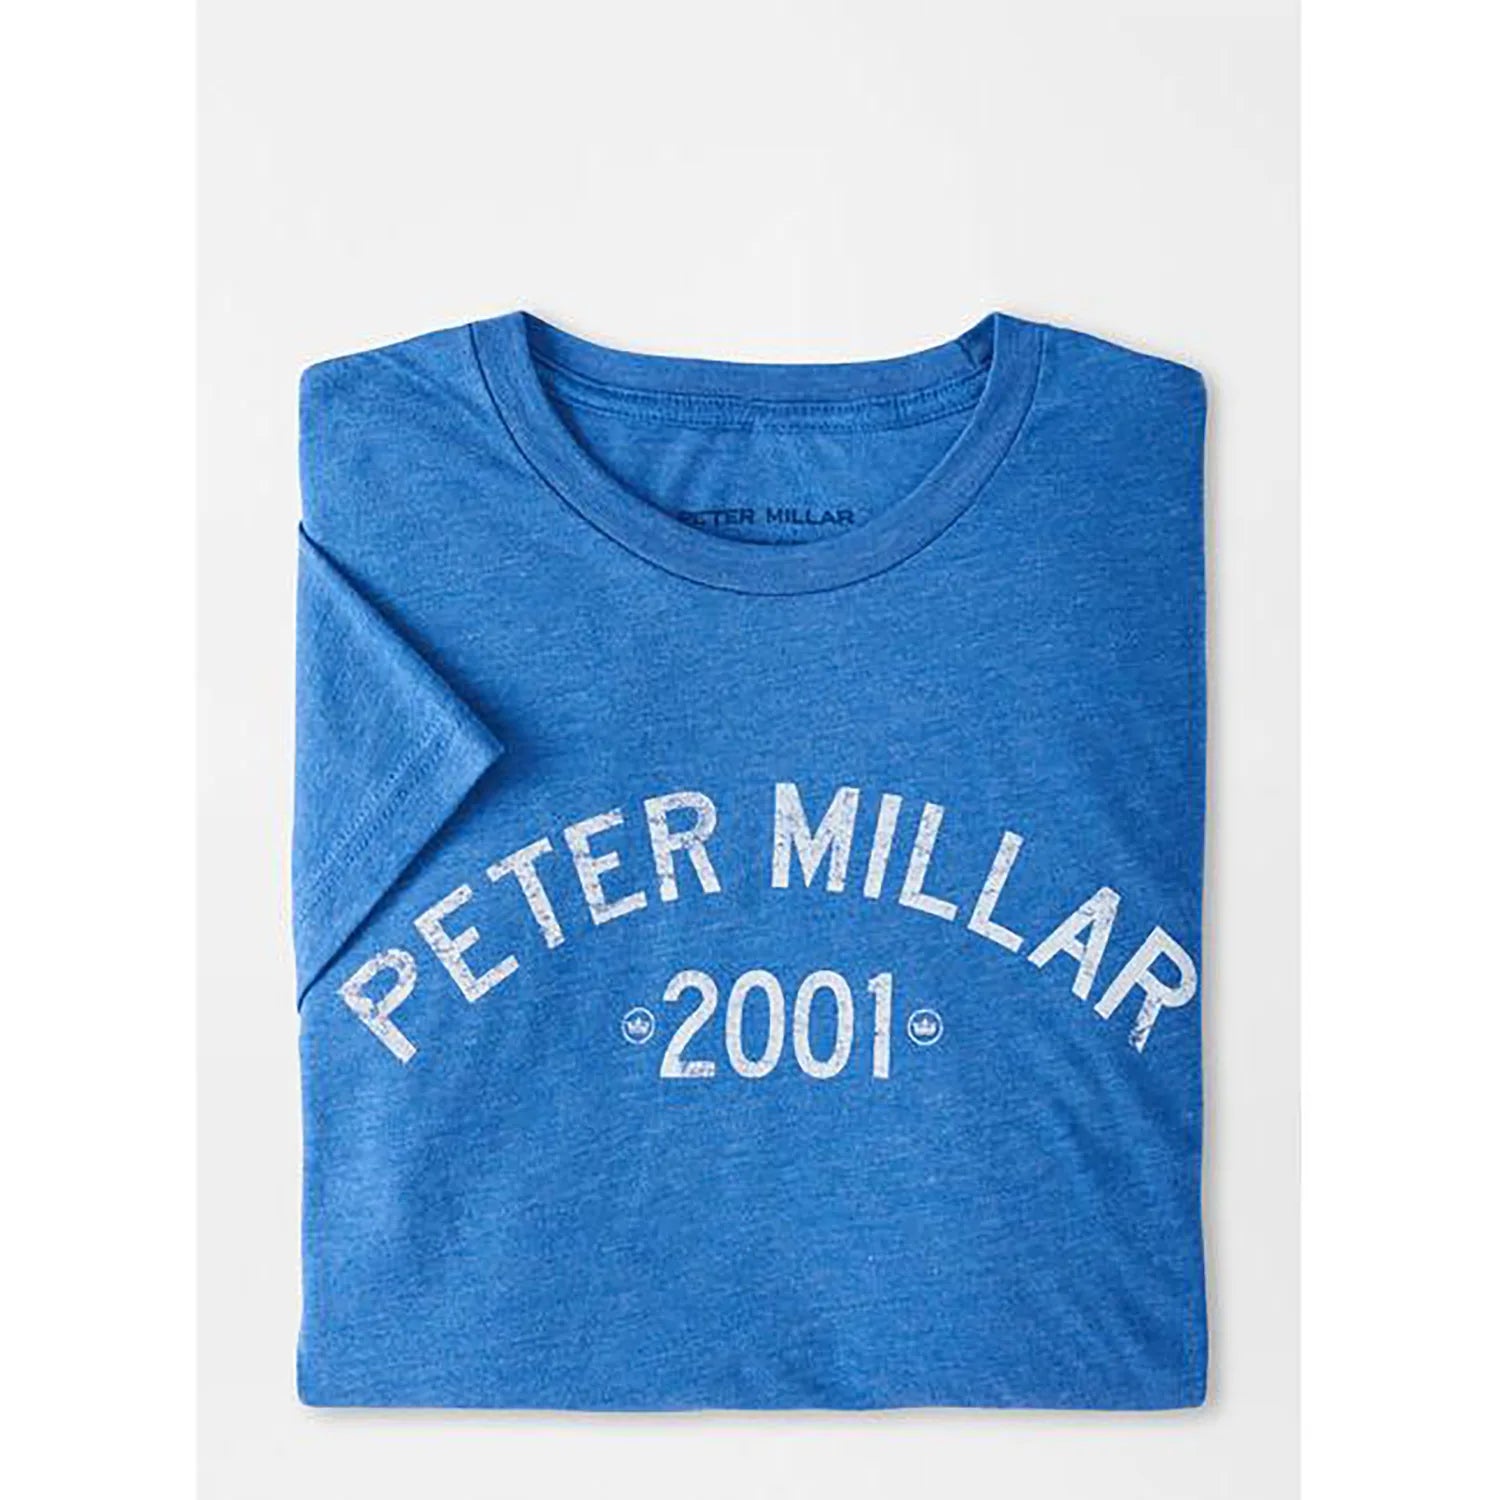 Peter Millar Classic T-Shirt, Royal